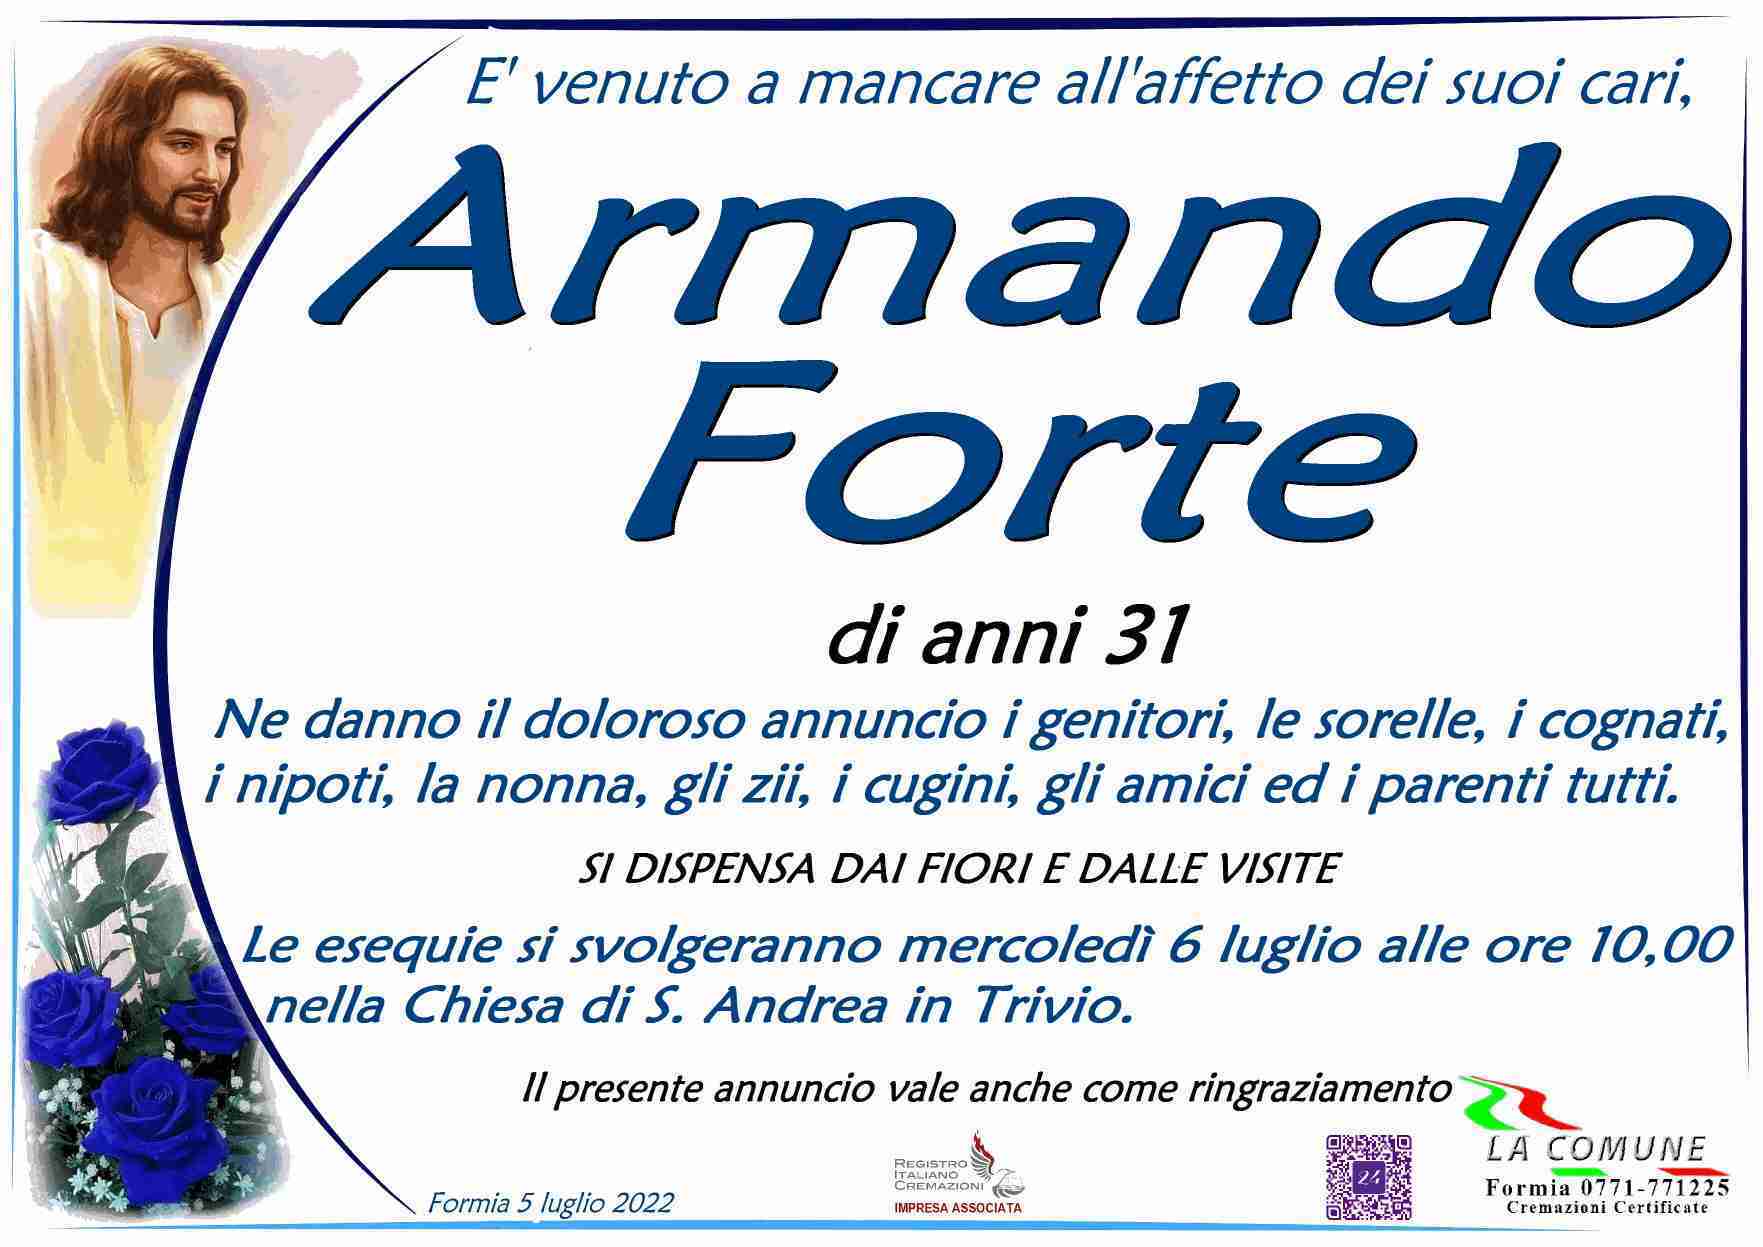 Armando Forte